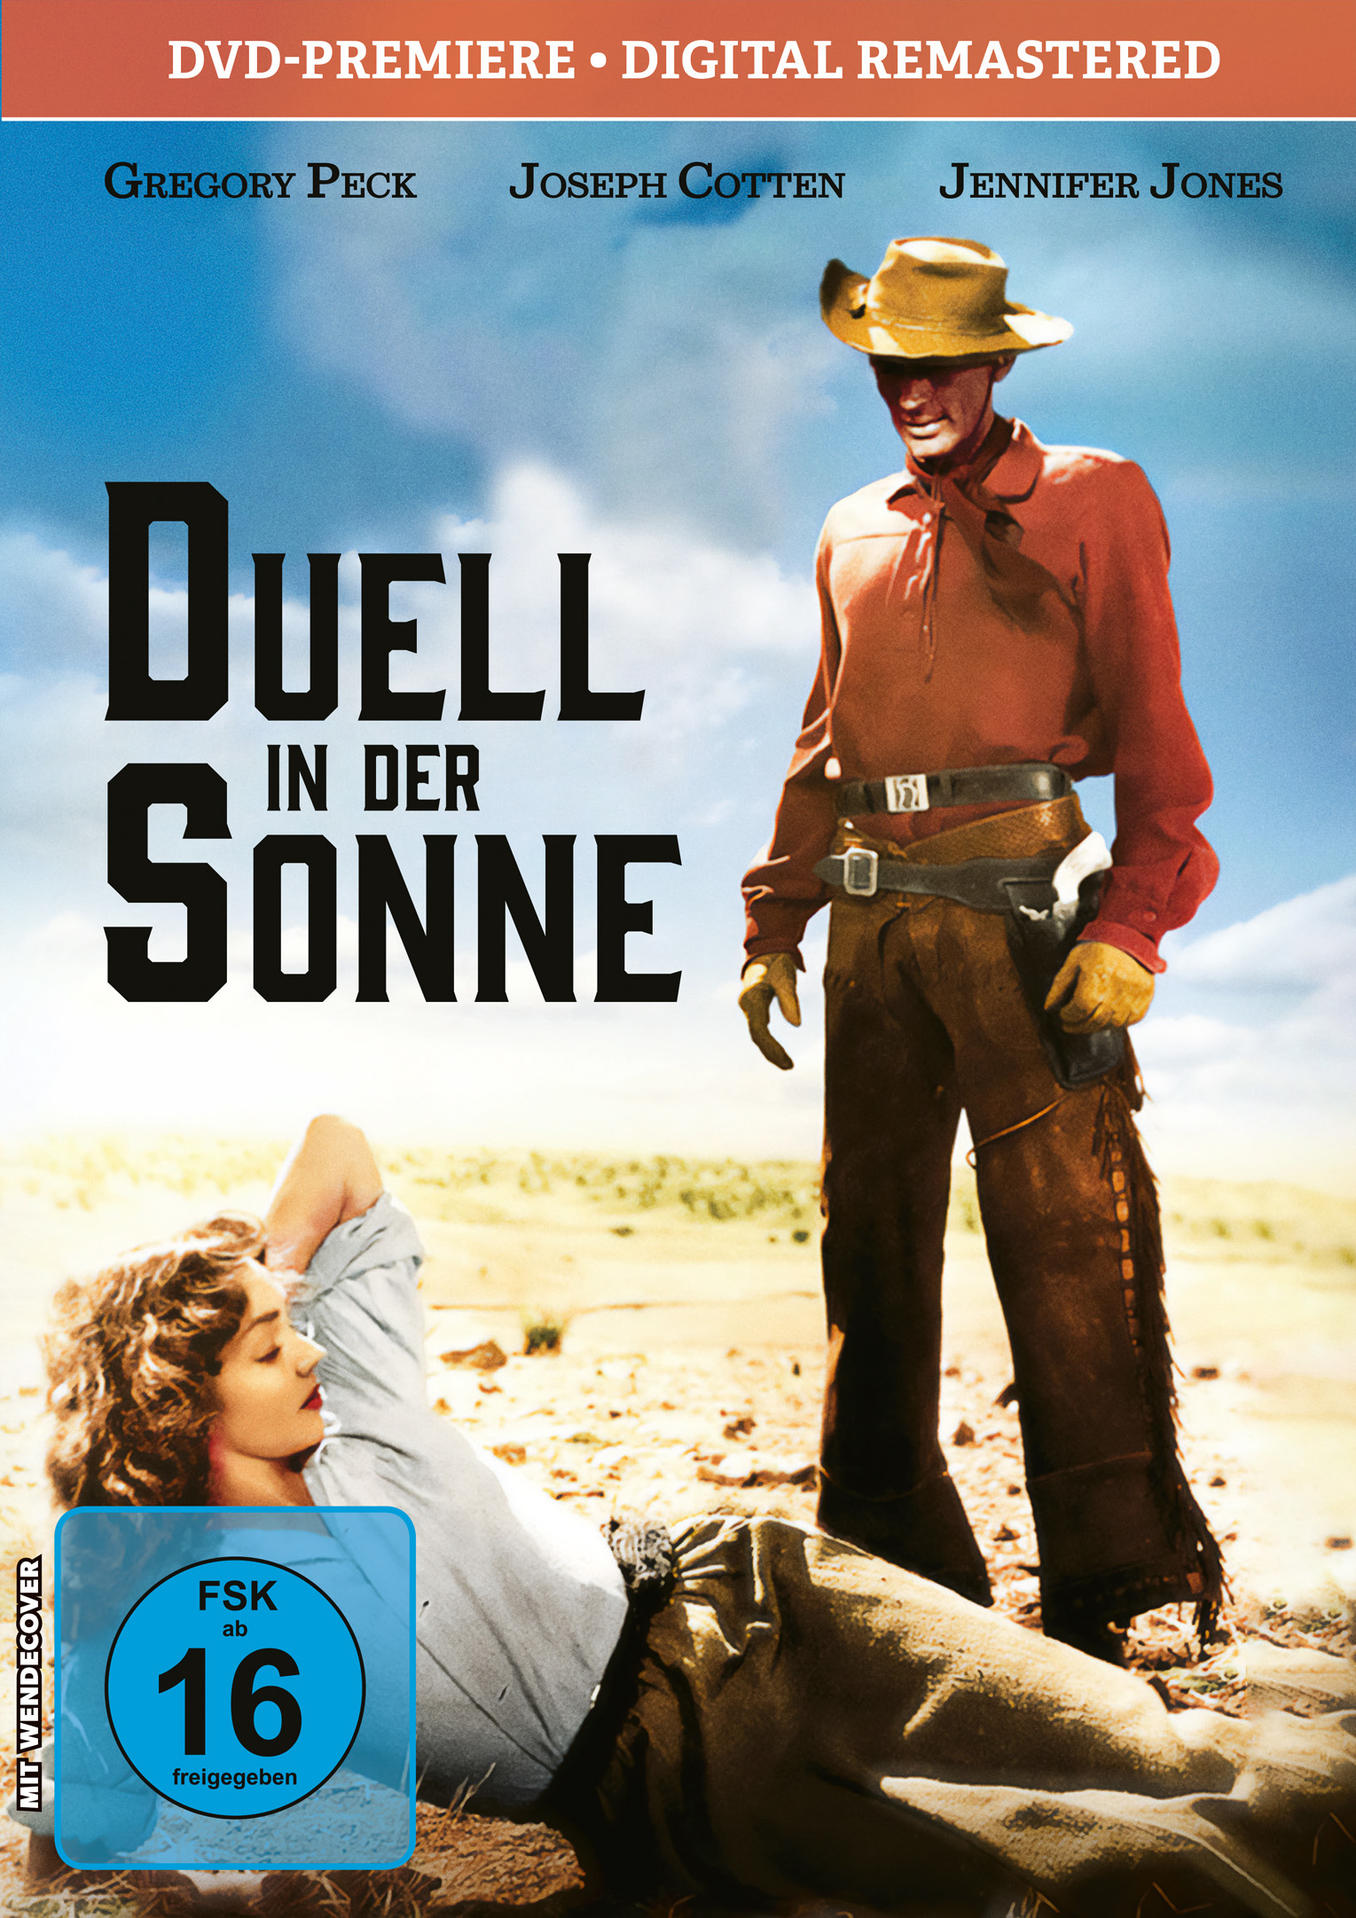 DVD Sonne-Kinofassung in der Duell